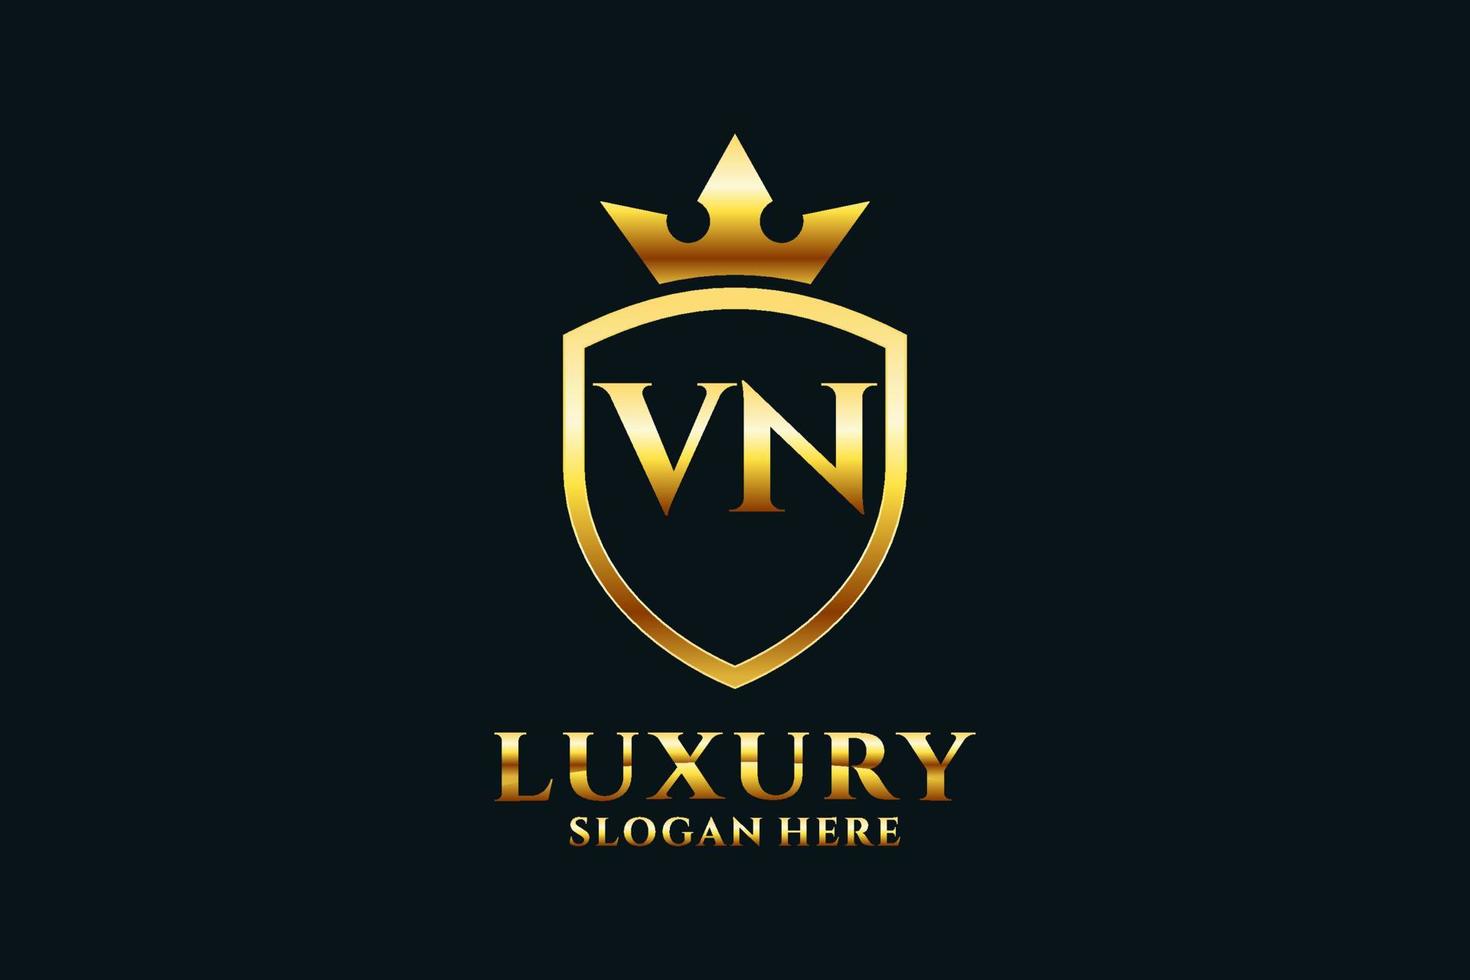 logotipo de monograma de lujo inicial vn elegante o plantilla de placa con pergaminos y corona real - perfecto para proyectos de marca de lujo vector